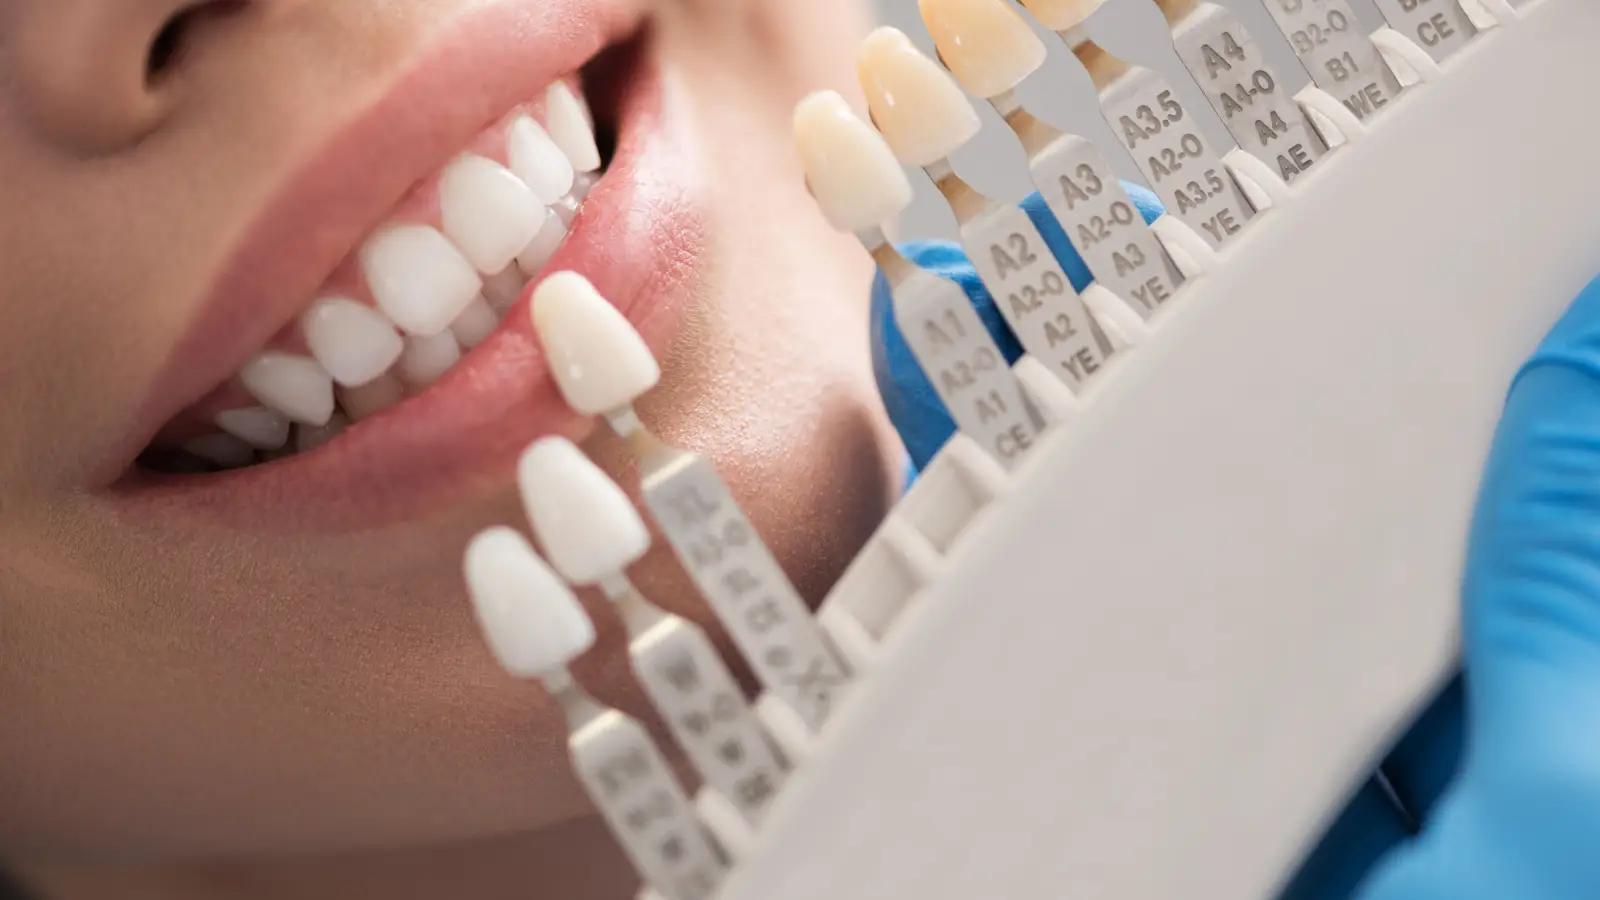 ما هي أفضل أنواع تلبيسات الأسنان؟ وكيف تعتني بها؟